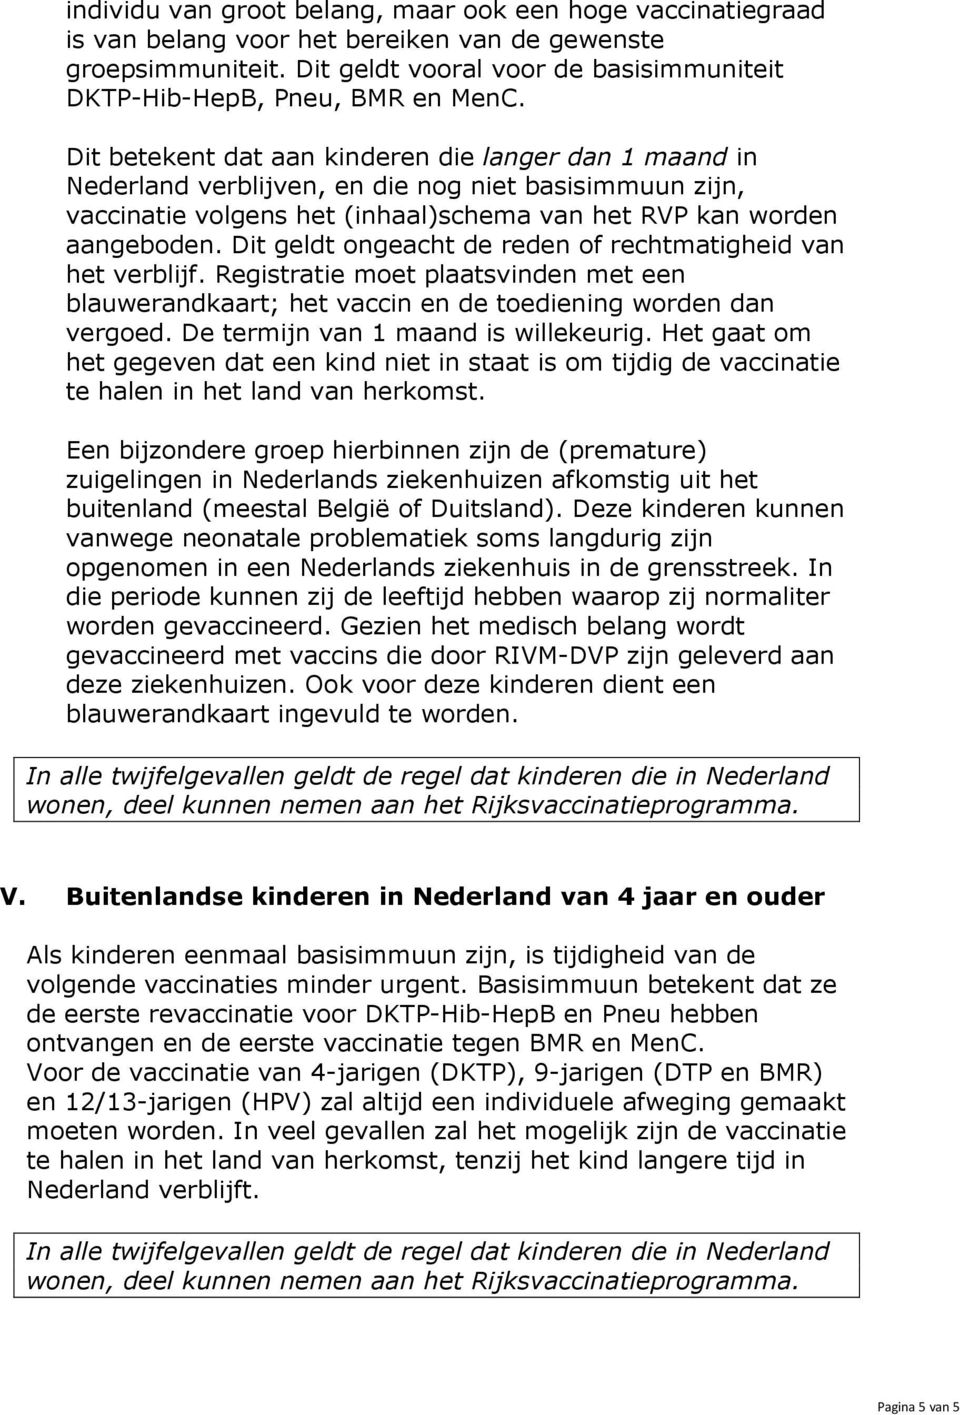 Dit betekent dat aan kinderen die langer dan 1 maand in Nederland verblijven, en die nog niet basisimmuun zijn, vaccinatie volgens het (inhaal)schema van het RVP kan worden aangeboden.